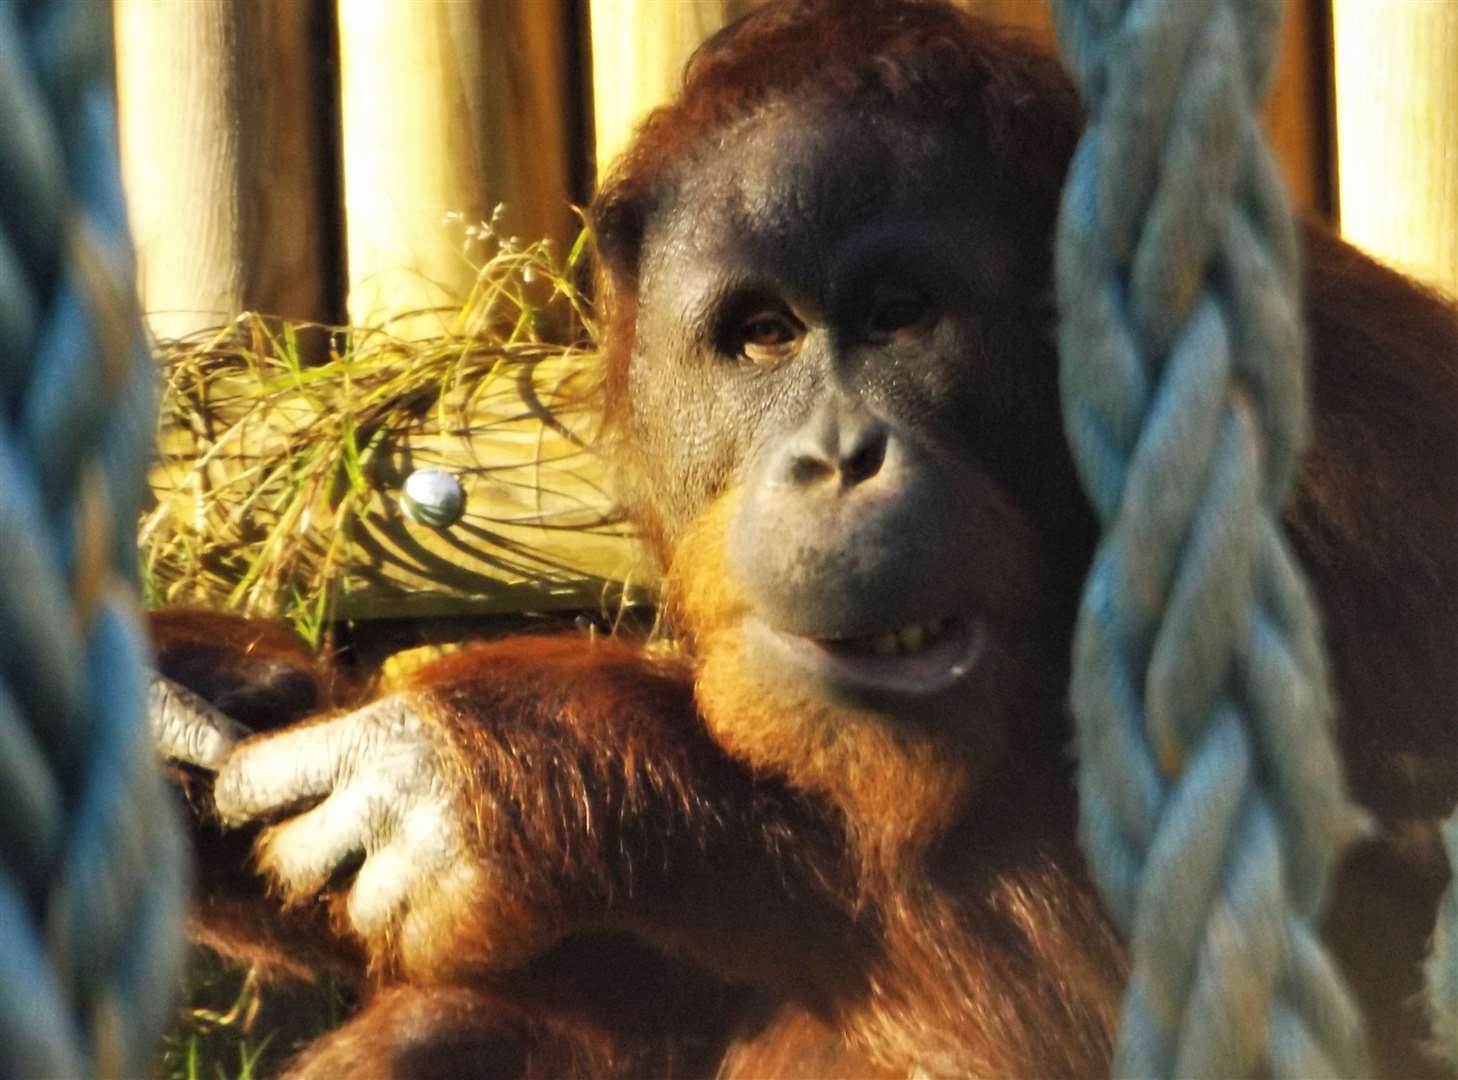 Meet the orangutans at Wingham Wildlife Park